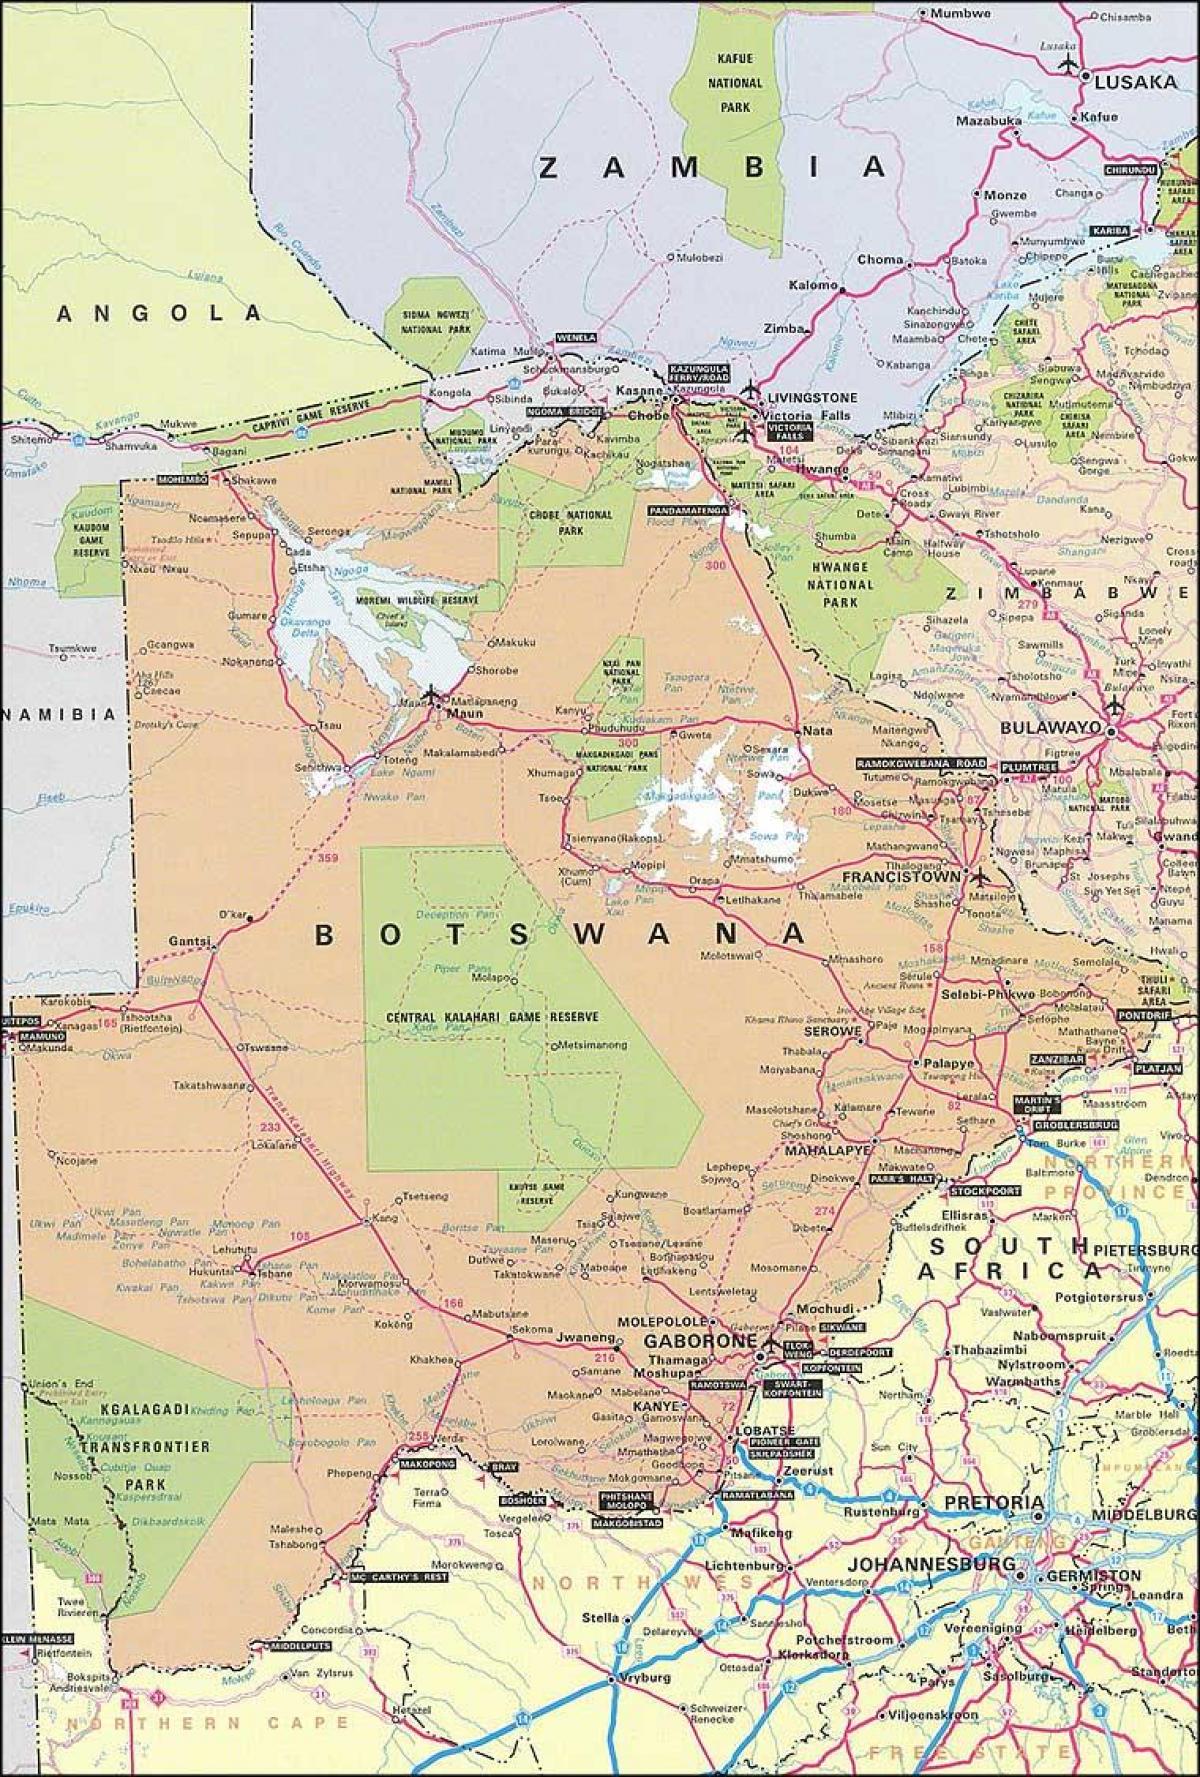 bản đồ của Botswana bản đồ với một khoảng cách